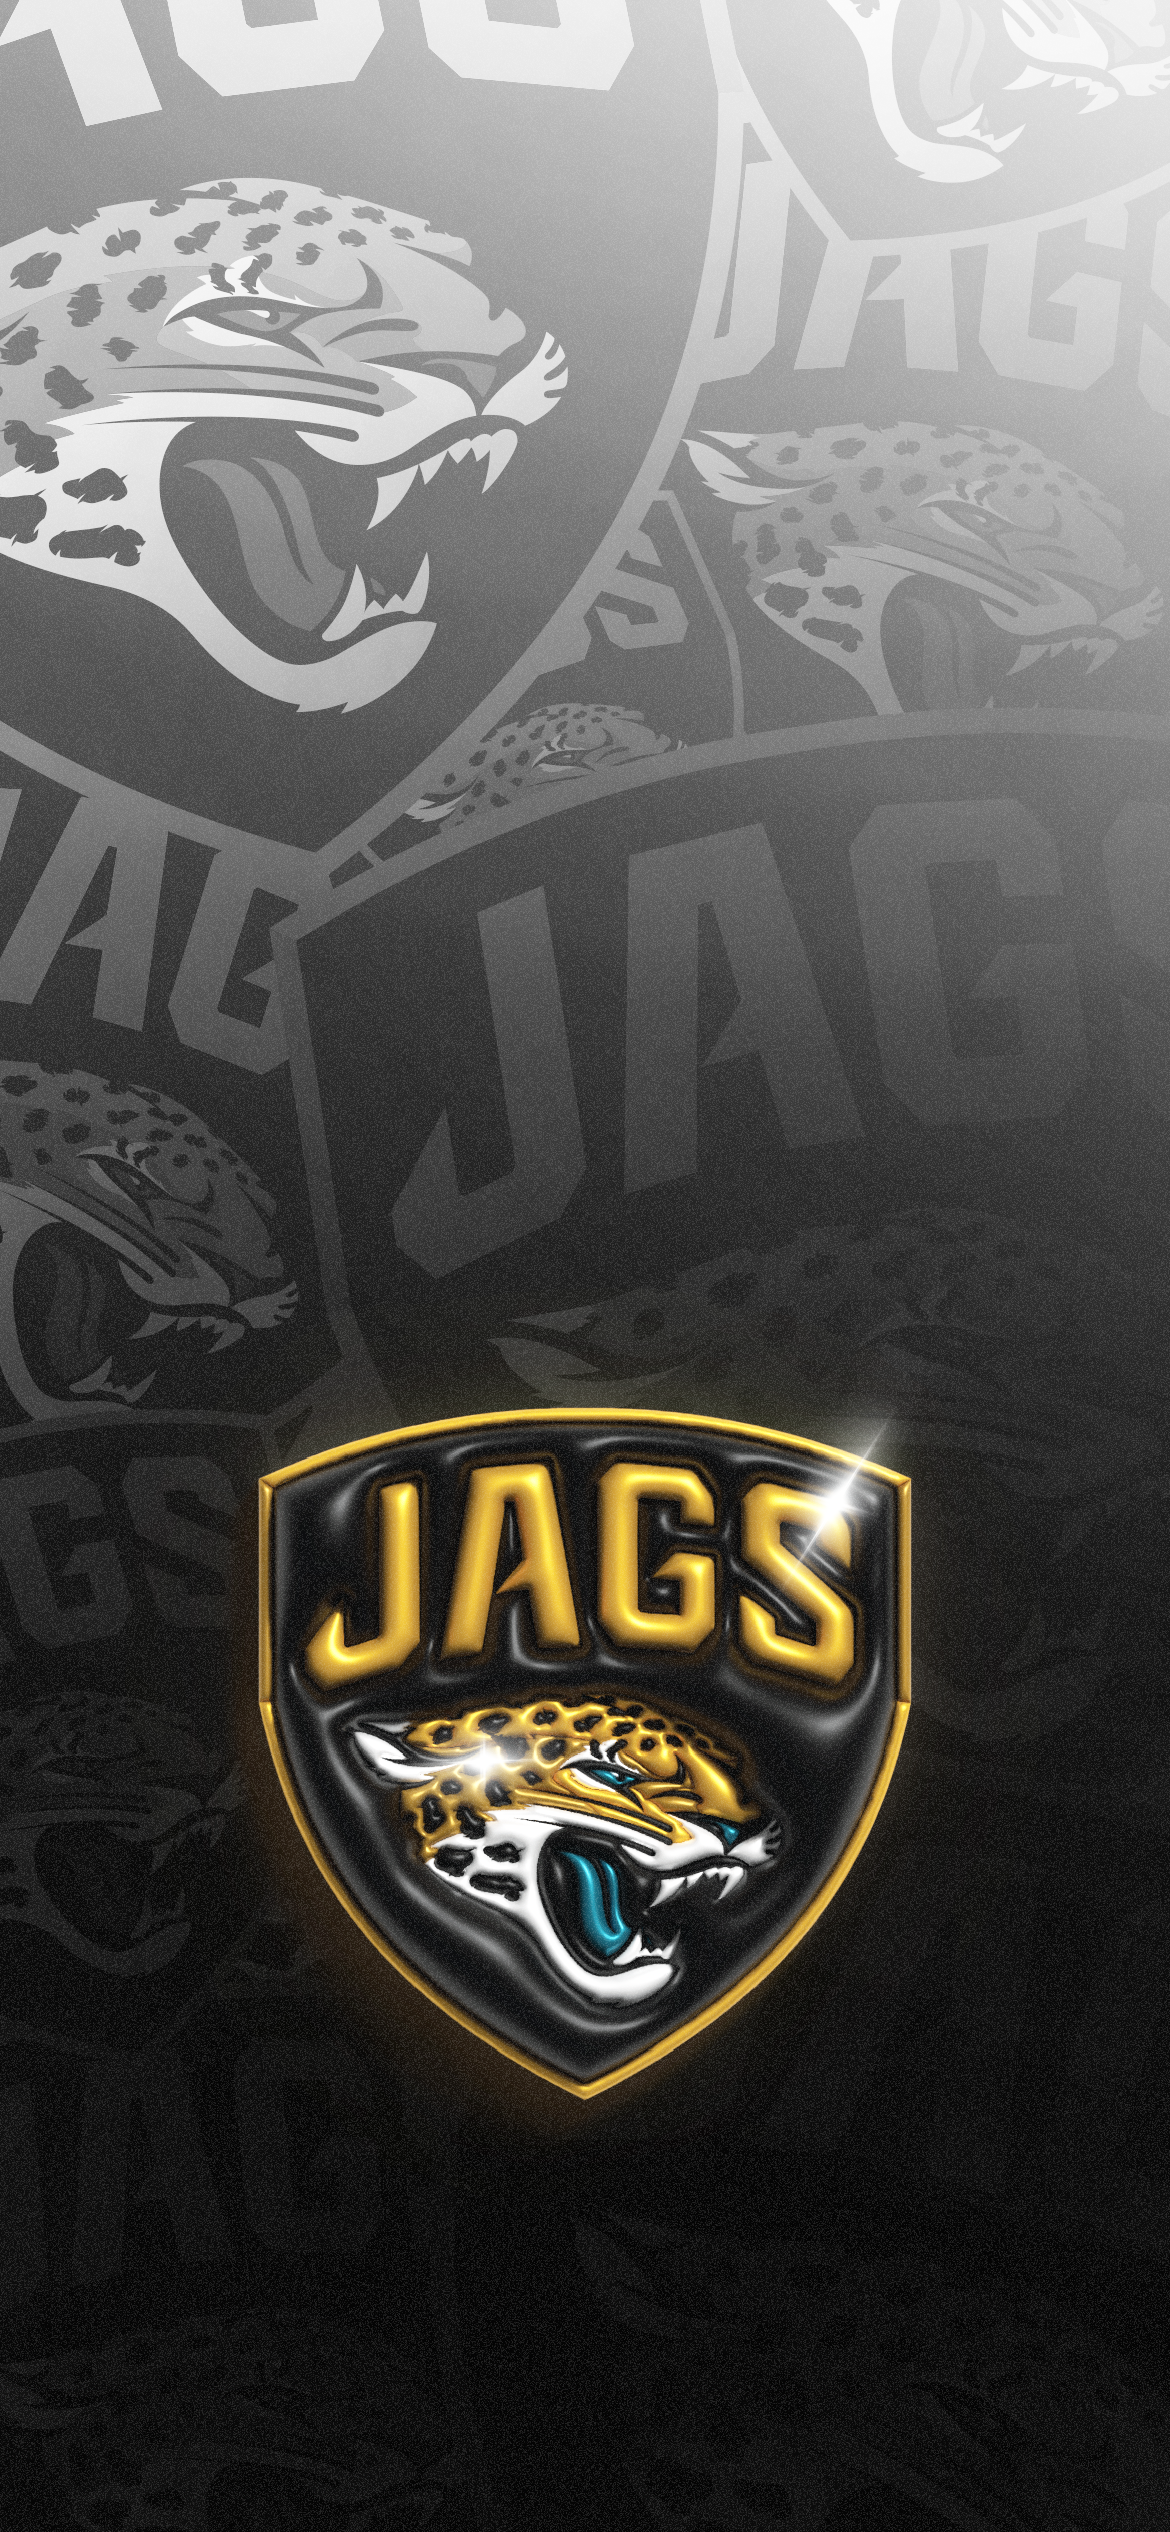 jacksonville jaguars phone wallpaper